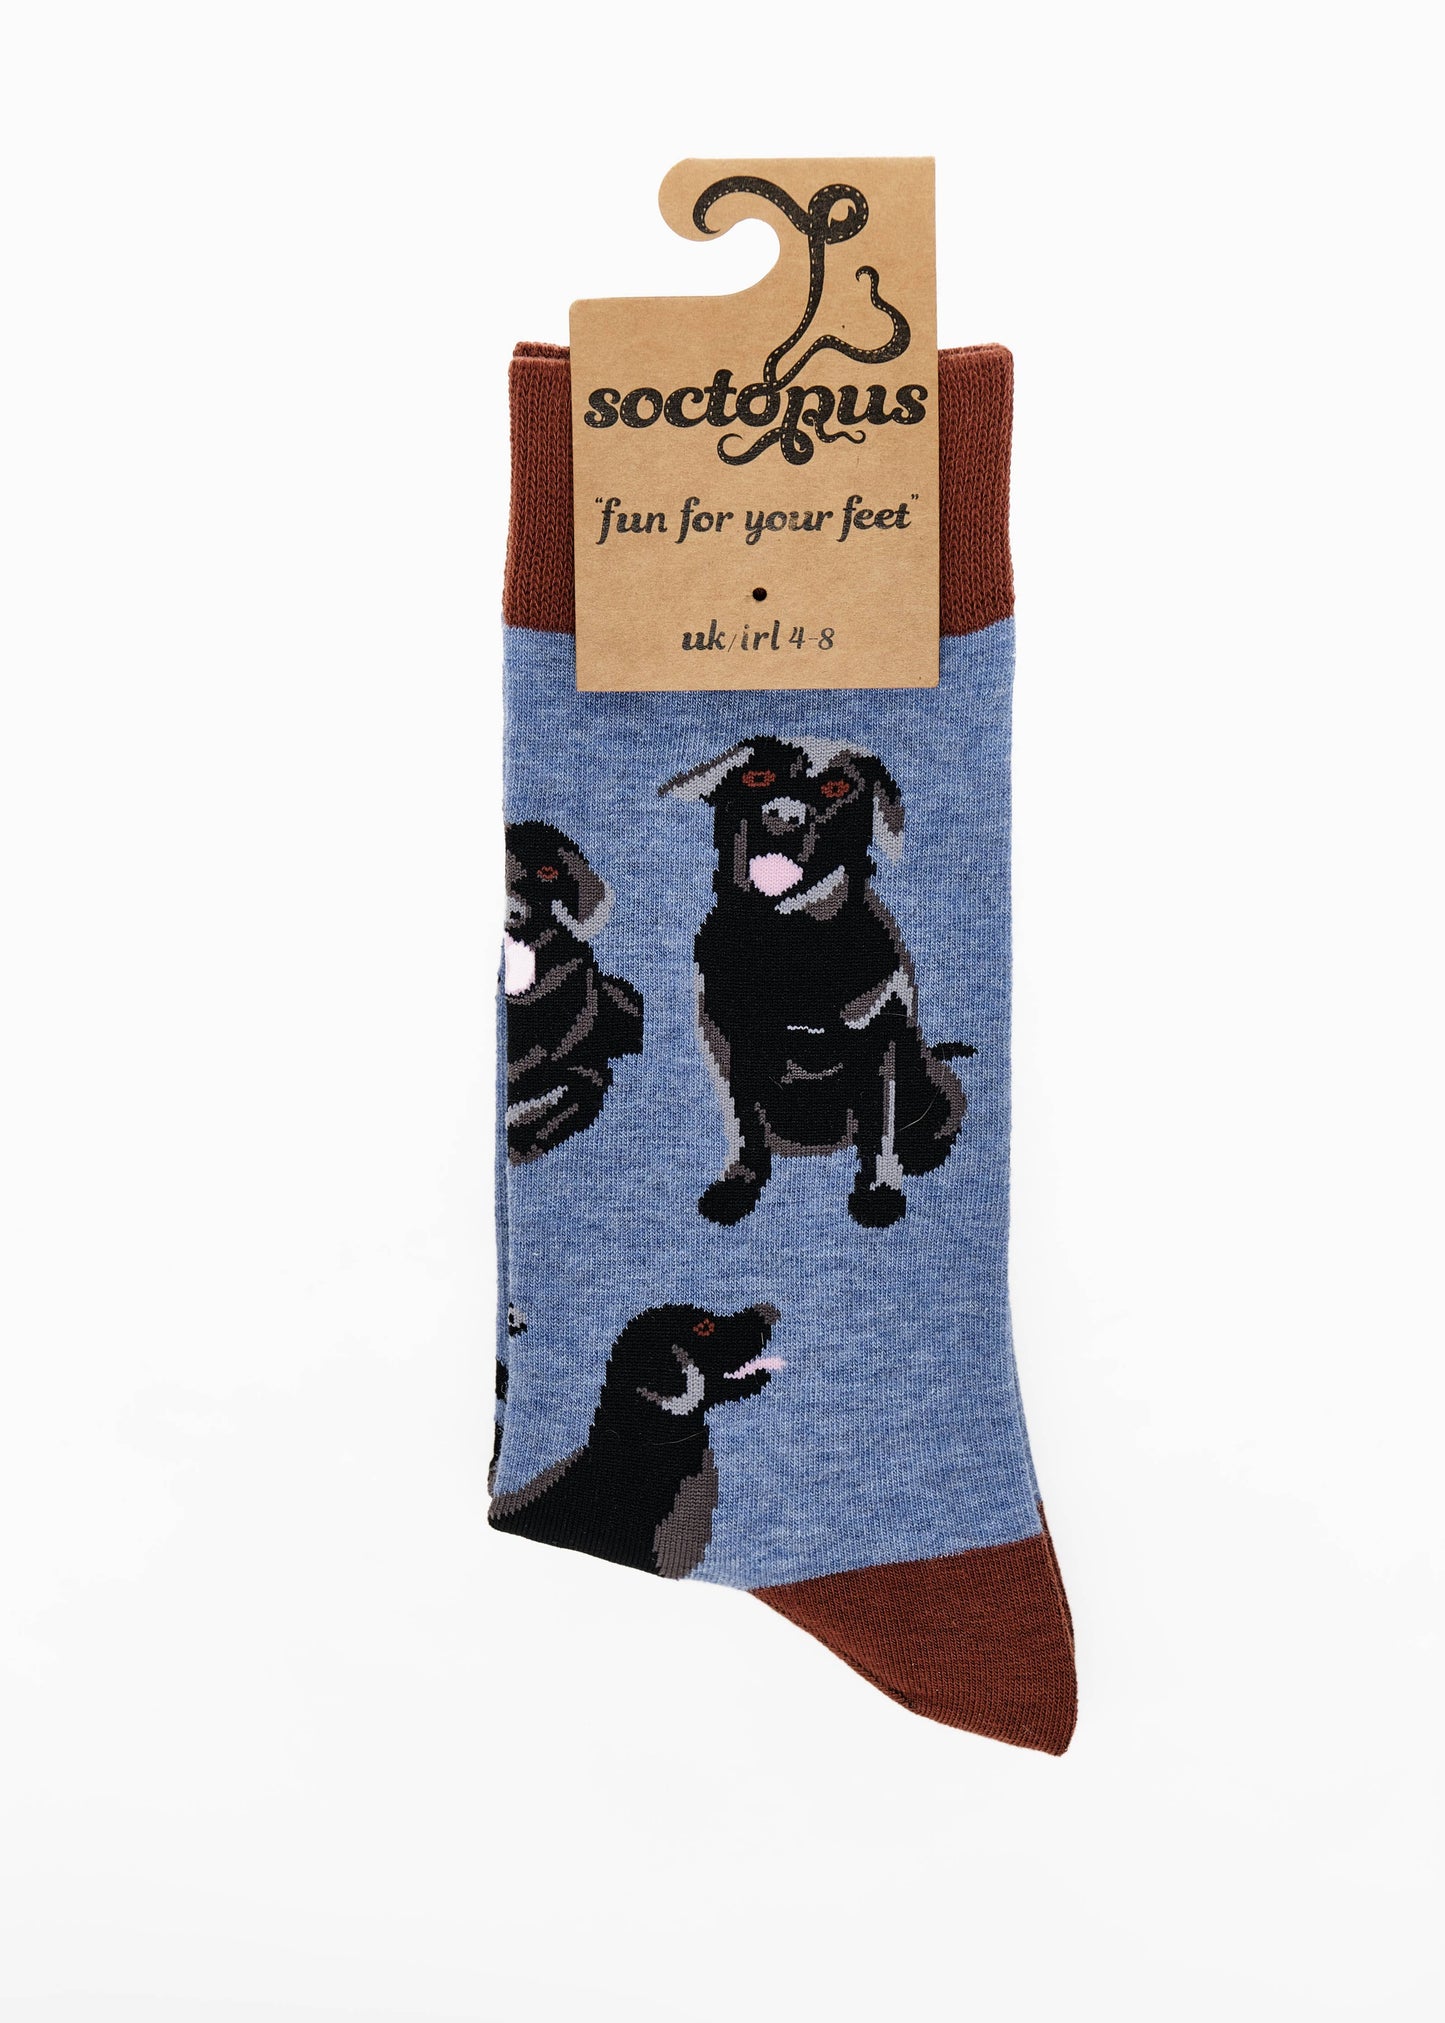 Black Labrador Socks